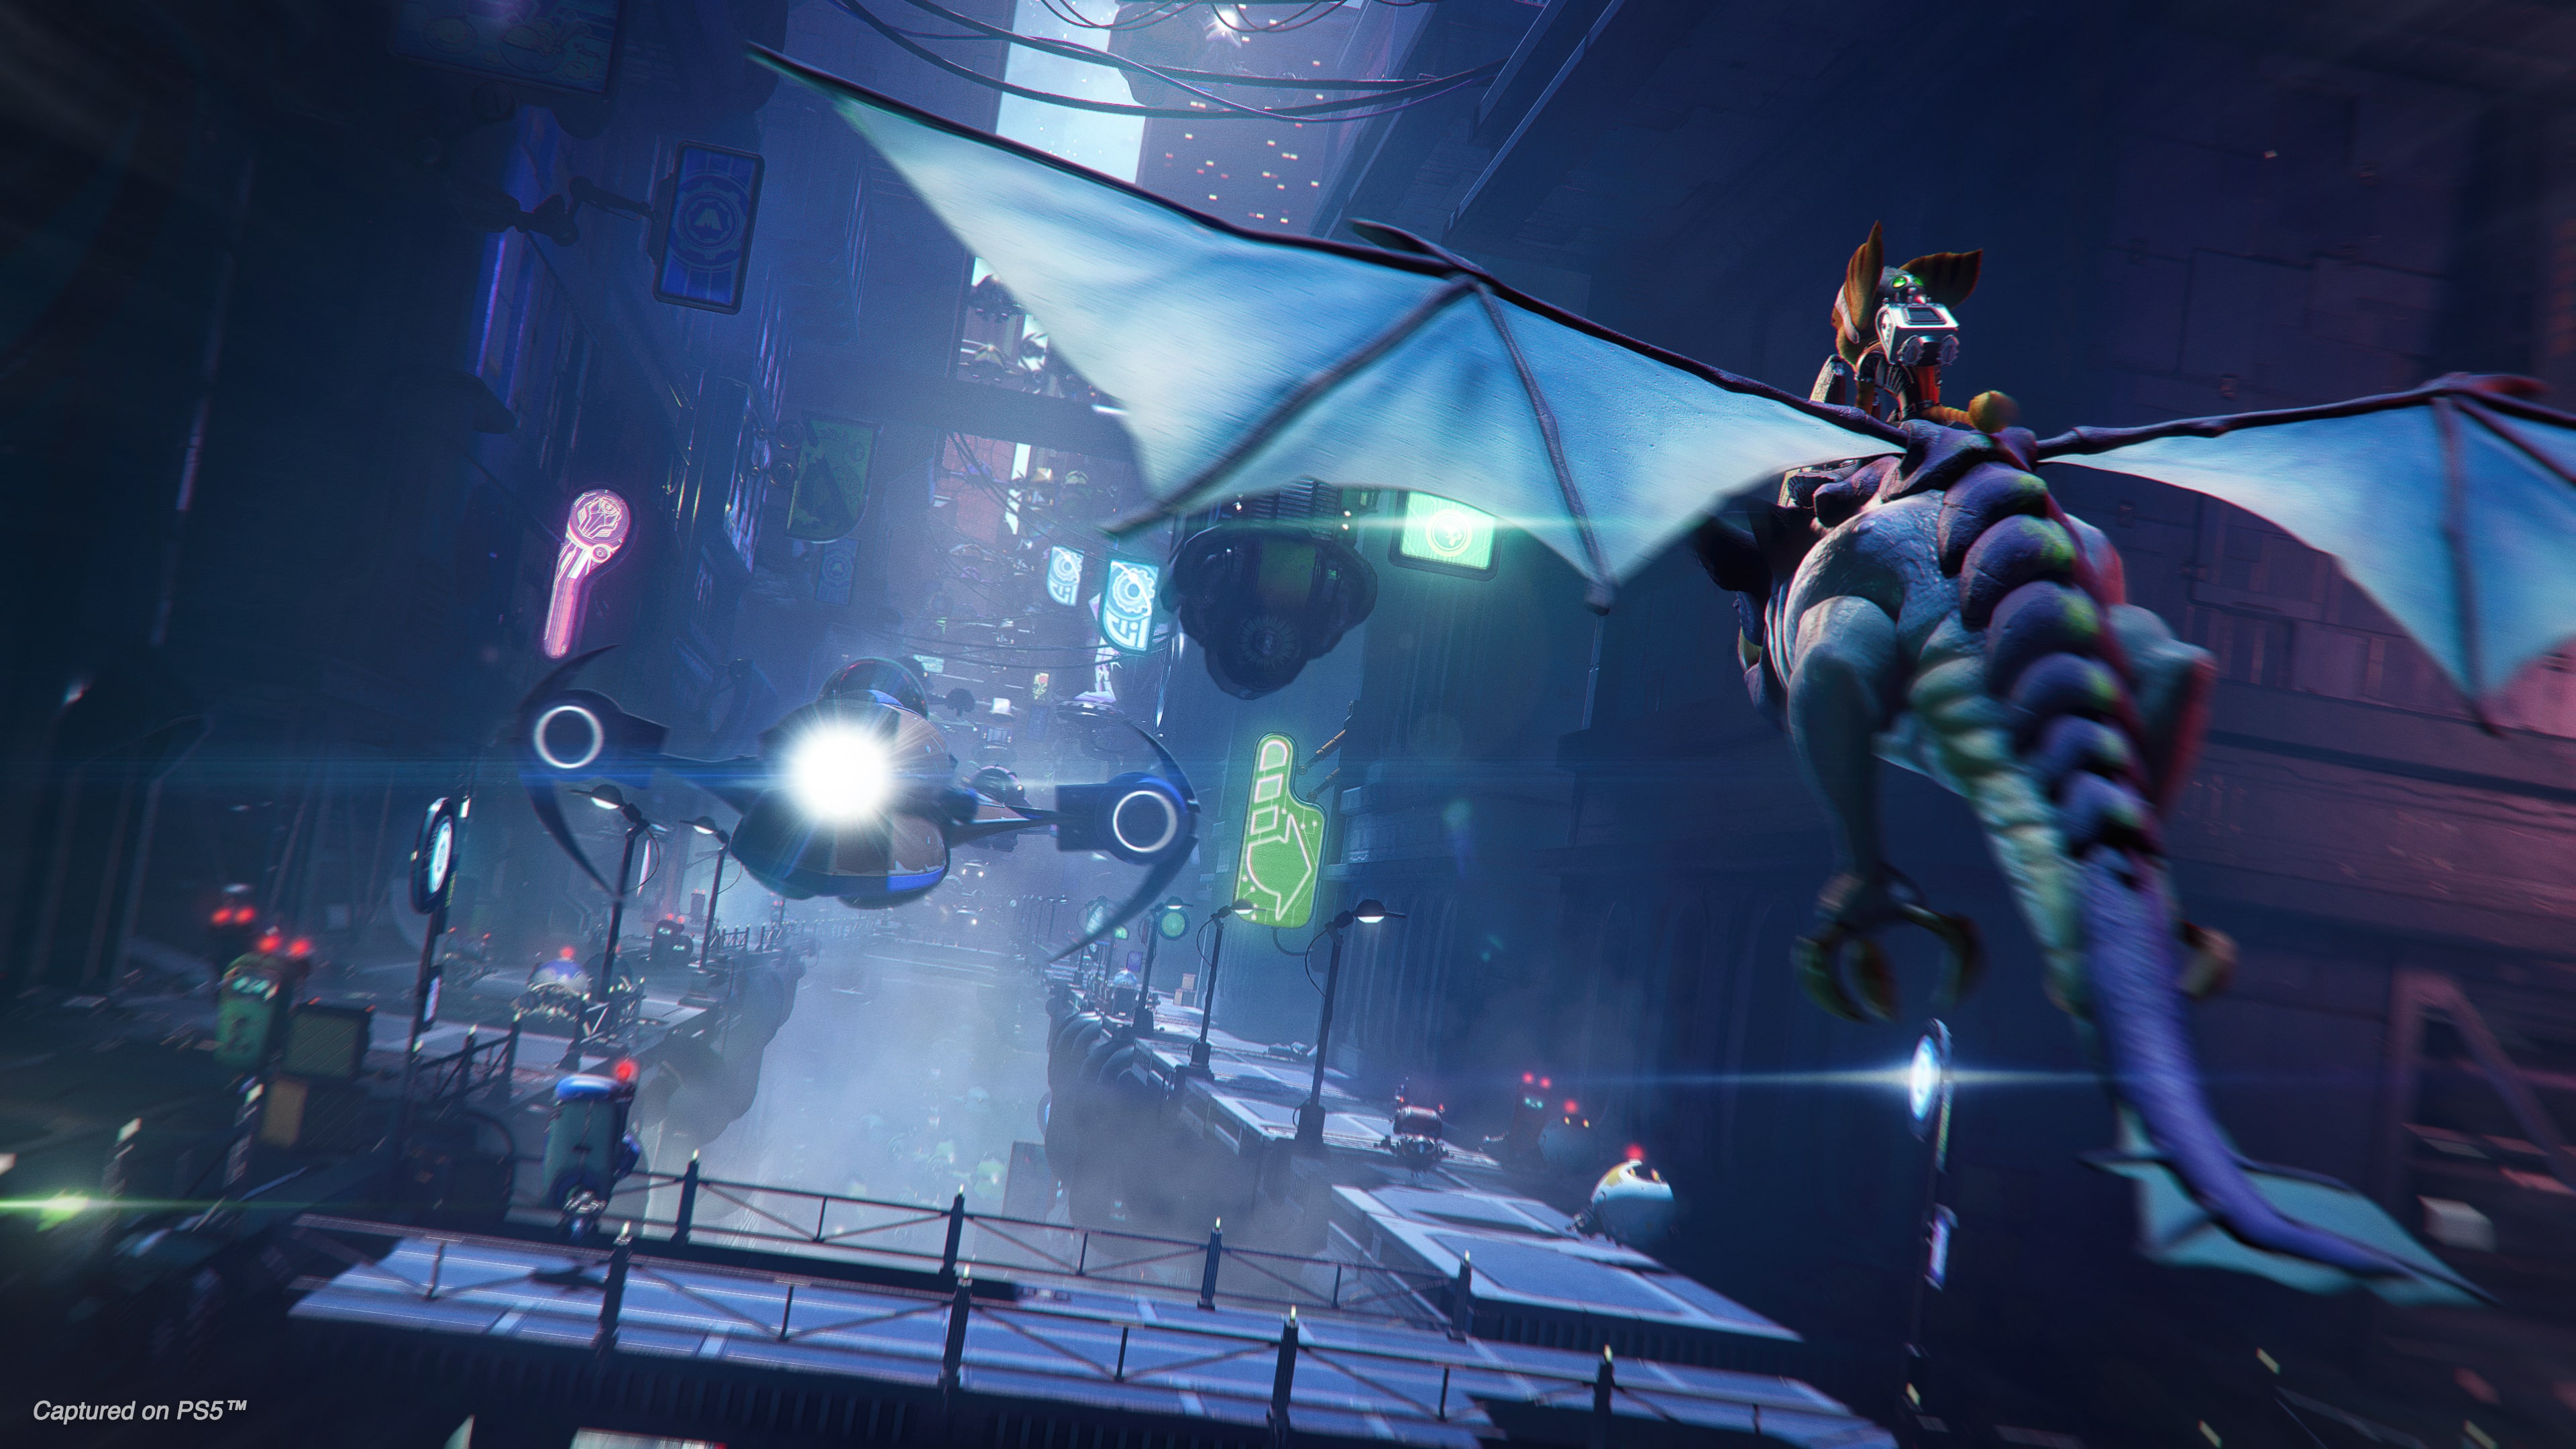 Jogo Ratchet & Clank: Em uma Outra Dimensão para PS5 – Marketplace Triibo